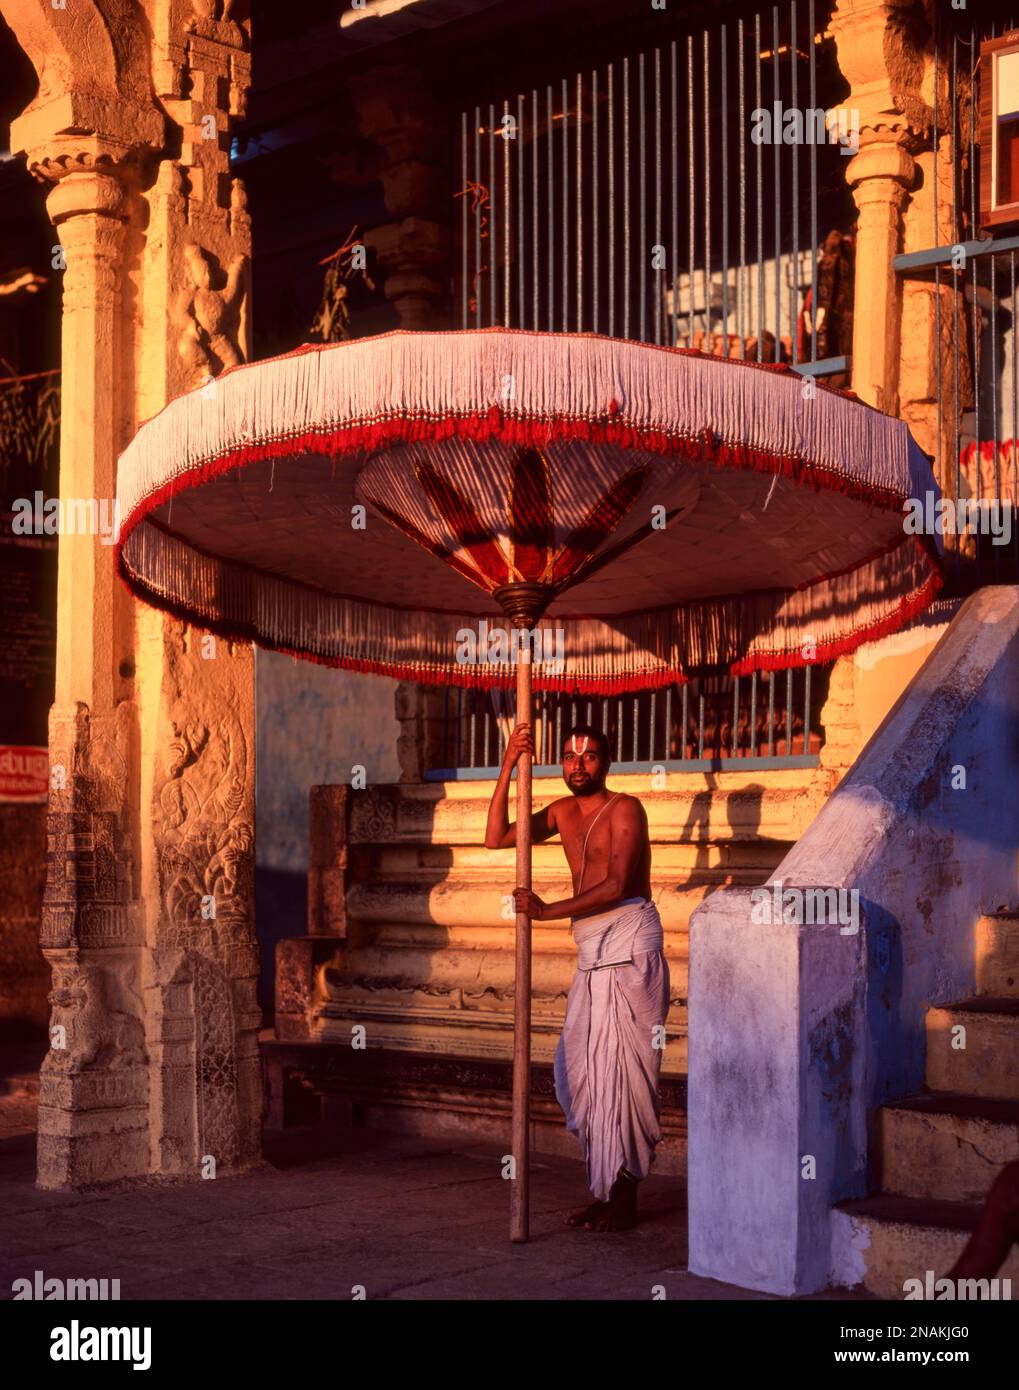 Temple Priest tenant un grand parapluie dans le temple de Varadharaja Perumal à Kancheepuram, Tamil Nadu, Inde, Asie Banque D'Images